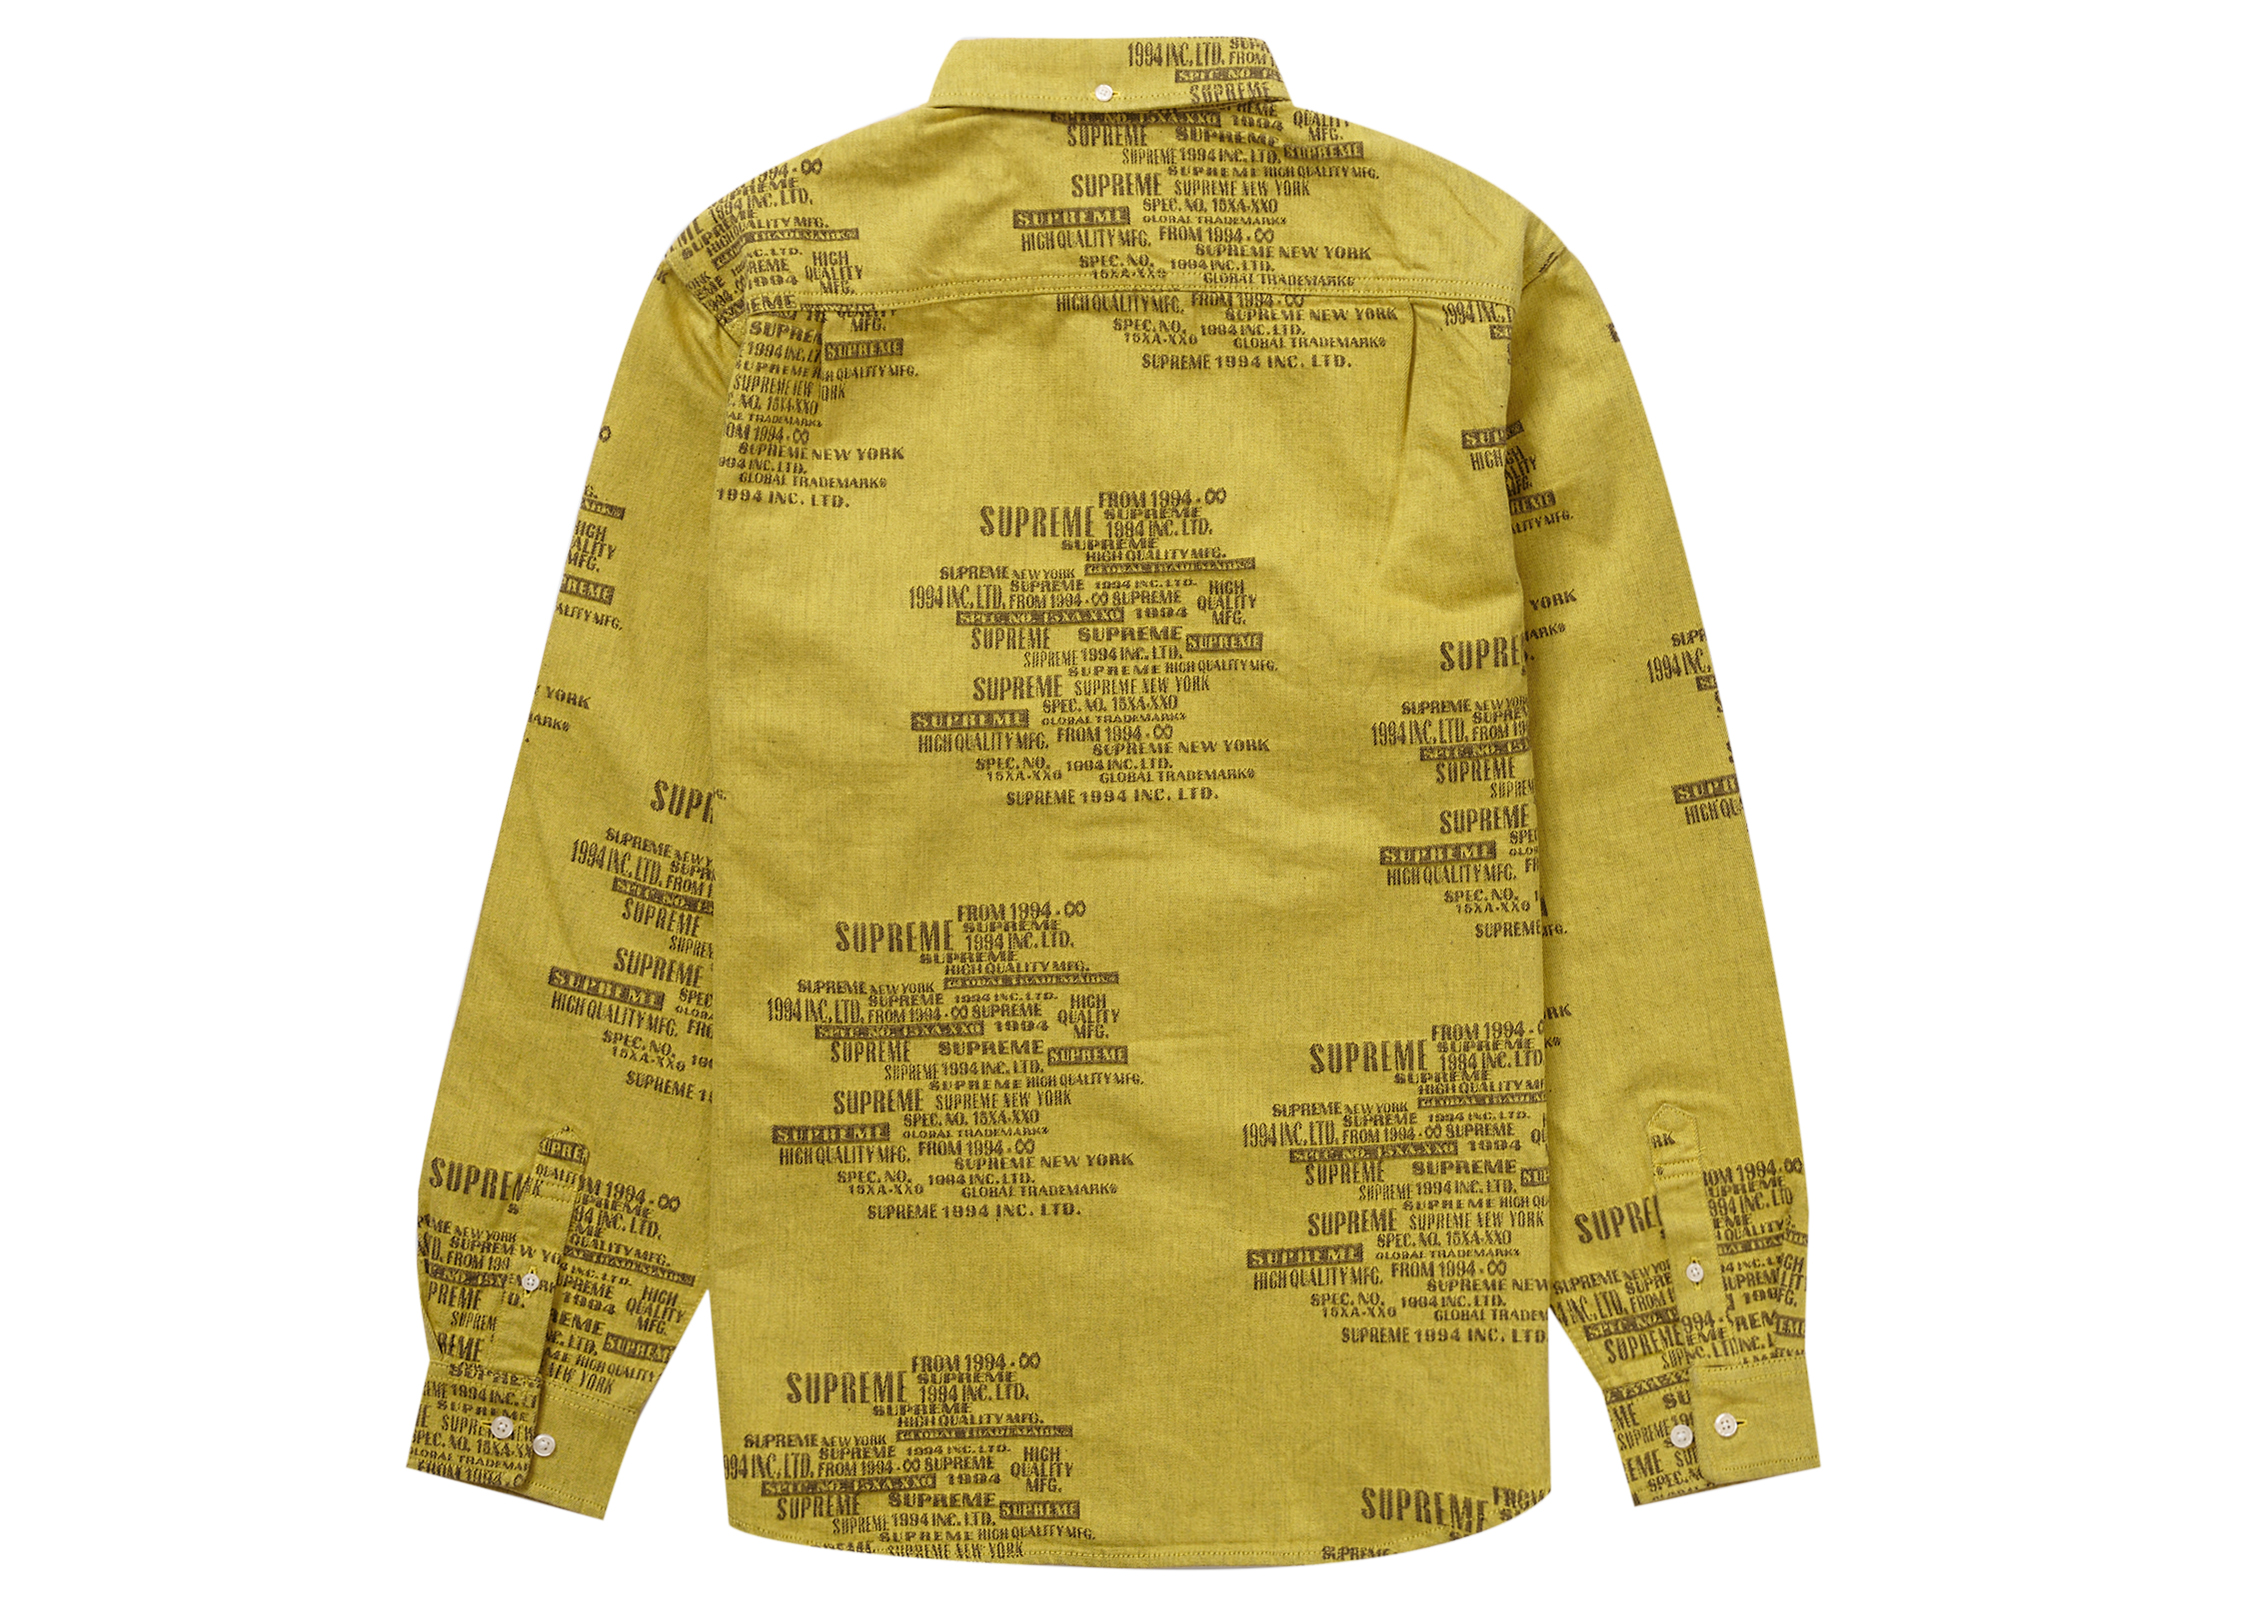 Supreme Trademark Jacquard Denim Shirt Washed Yellow Men's - SS23 - US